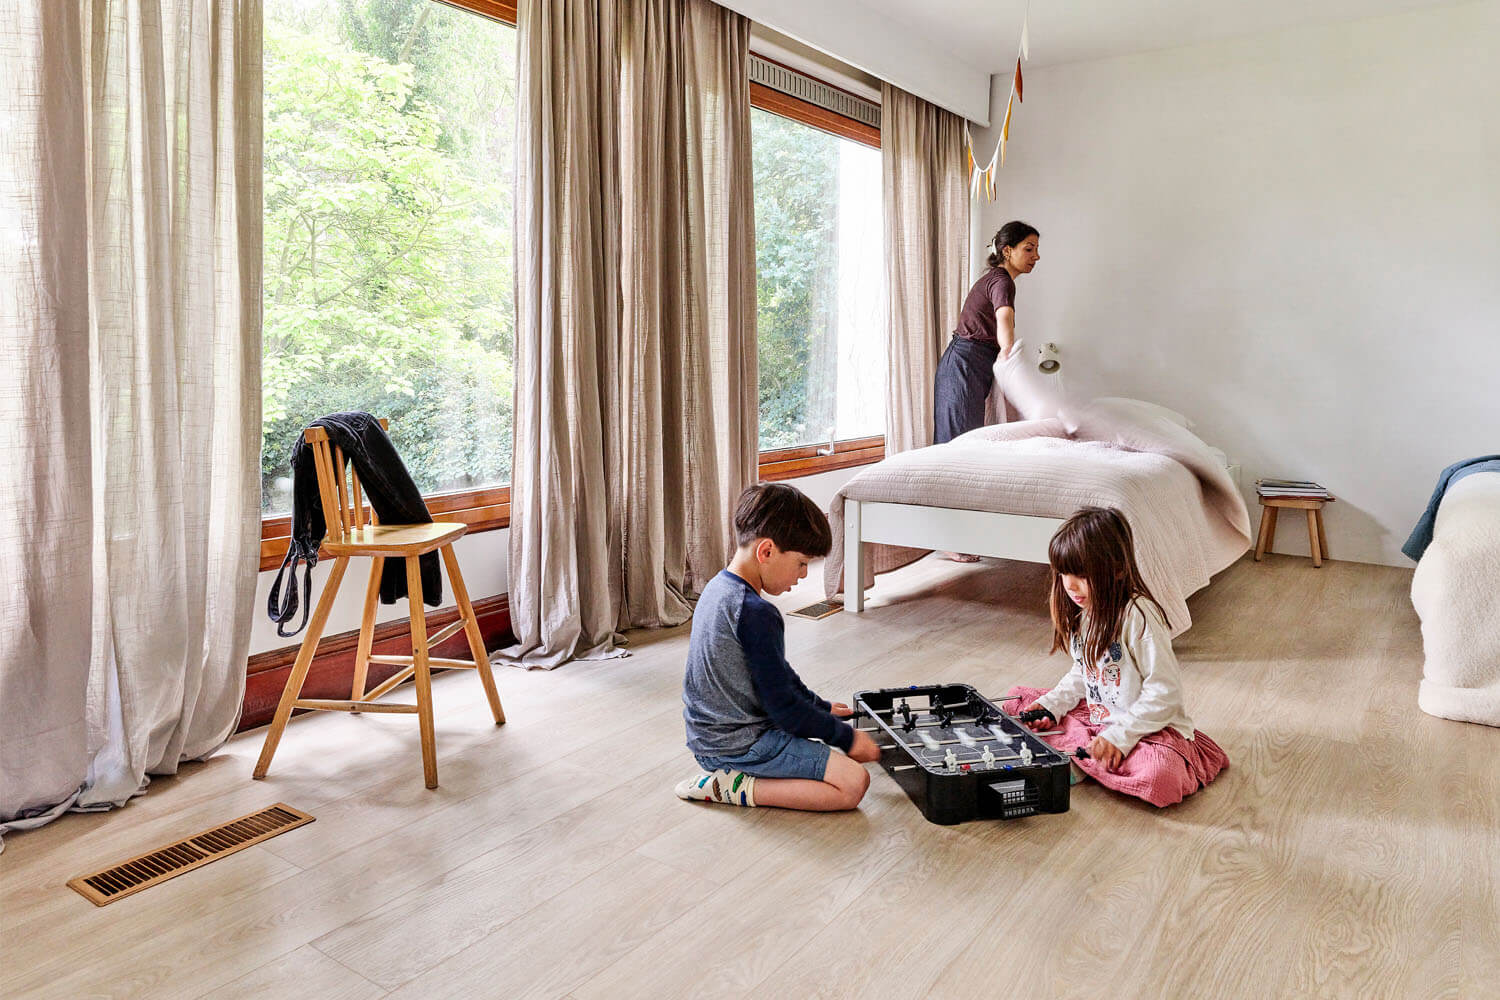 Sumeyya fait le lit dans la chambre des enfants pendant qu’ils jouent par terre. Ce sol est le sol vinyle de luxe Moduleo LayRed Laurel Oak 51230 Embossed.